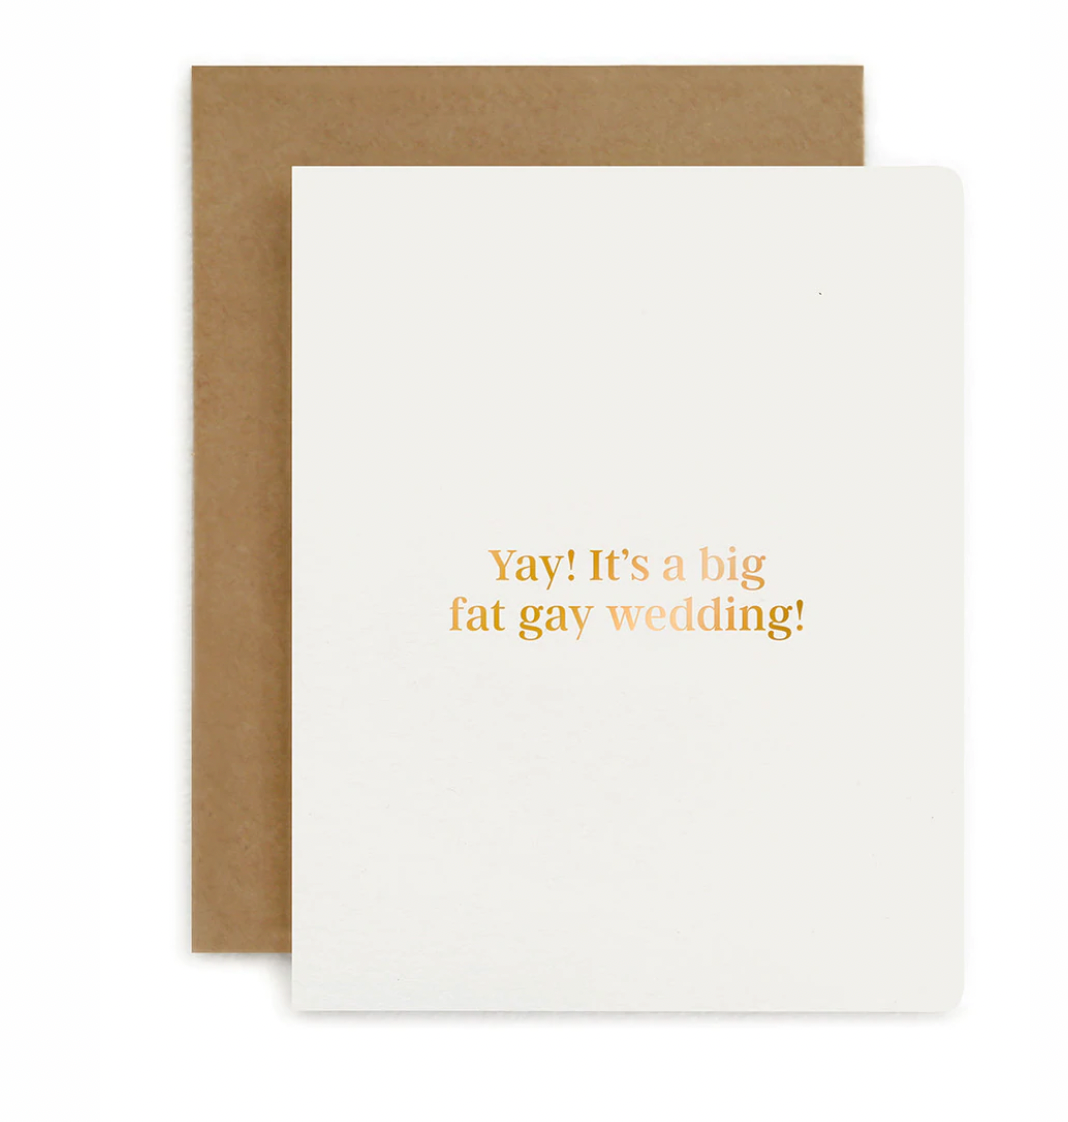 yay! It's a big fat gay wedding - Greeting Card